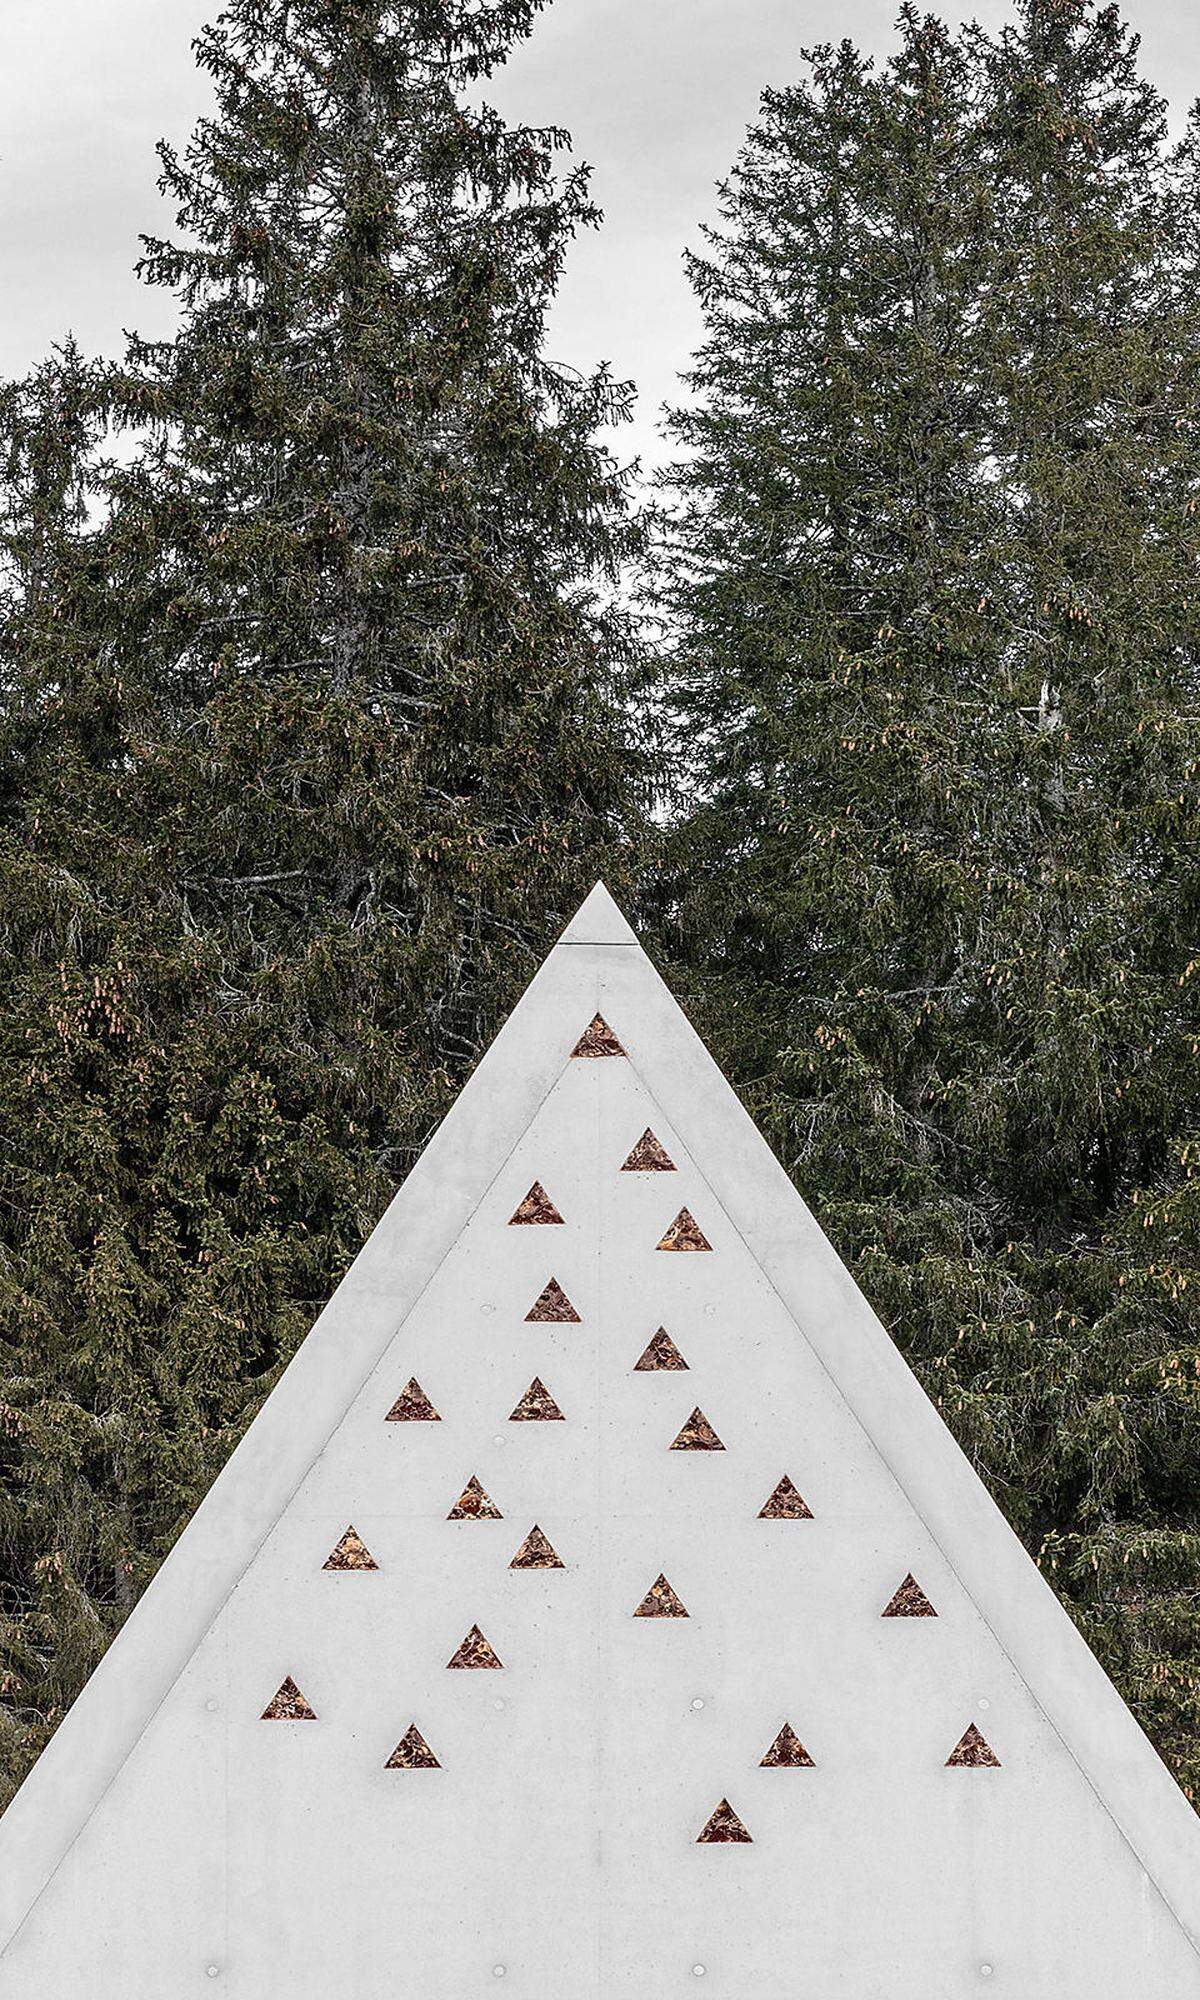 Geplant von pedevilla Architekten (mit willeit architektur) in Form einer Zinne - oder eines Berggipfels? - dient es als Info-Point, Ausstellungsraum und Schutz für Wanderer vor Regen, Schnee oder Sturn.  